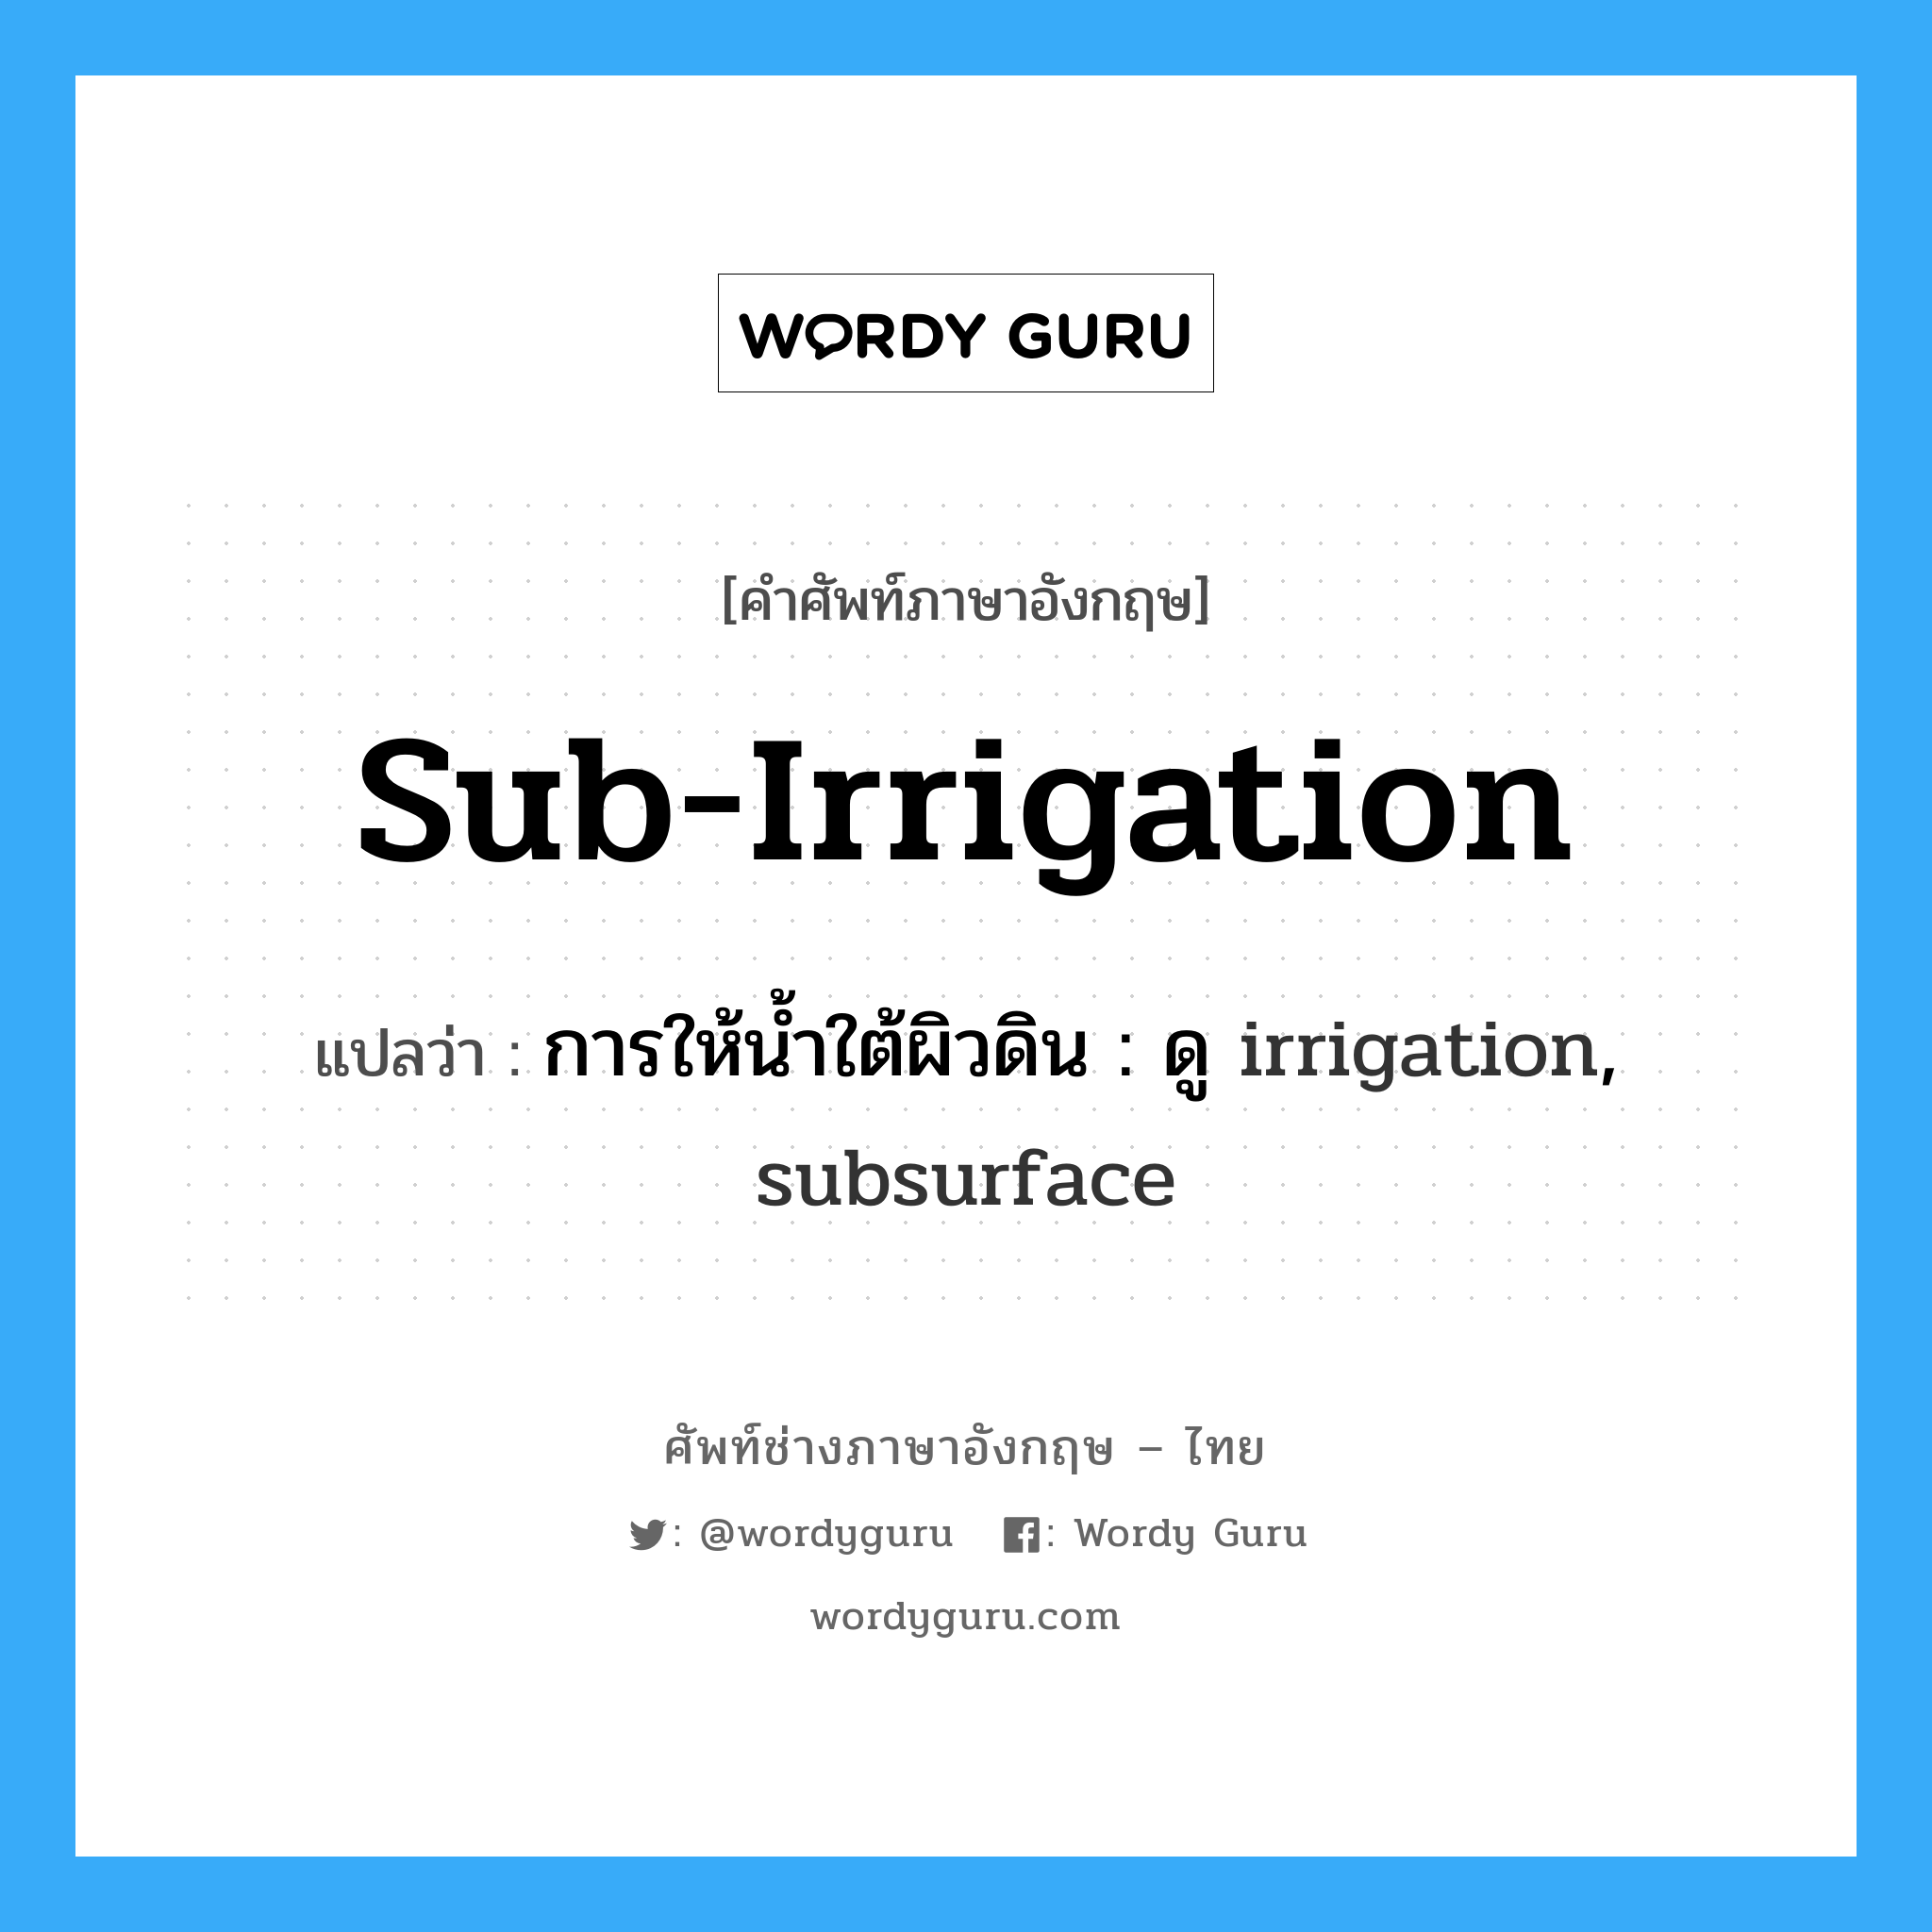 การให้น้ำใต้ผิวดิน : ดู irrigation, subsurface ภาษาอังกฤษ?, คำศัพท์ช่างภาษาอังกฤษ - ไทย การให้น้ำใต้ผิวดิน : ดู irrigation, subsurface คำศัพท์ภาษาอังกฤษ การให้น้ำใต้ผิวดิน : ดู irrigation, subsurface แปลว่า sub-irrigation